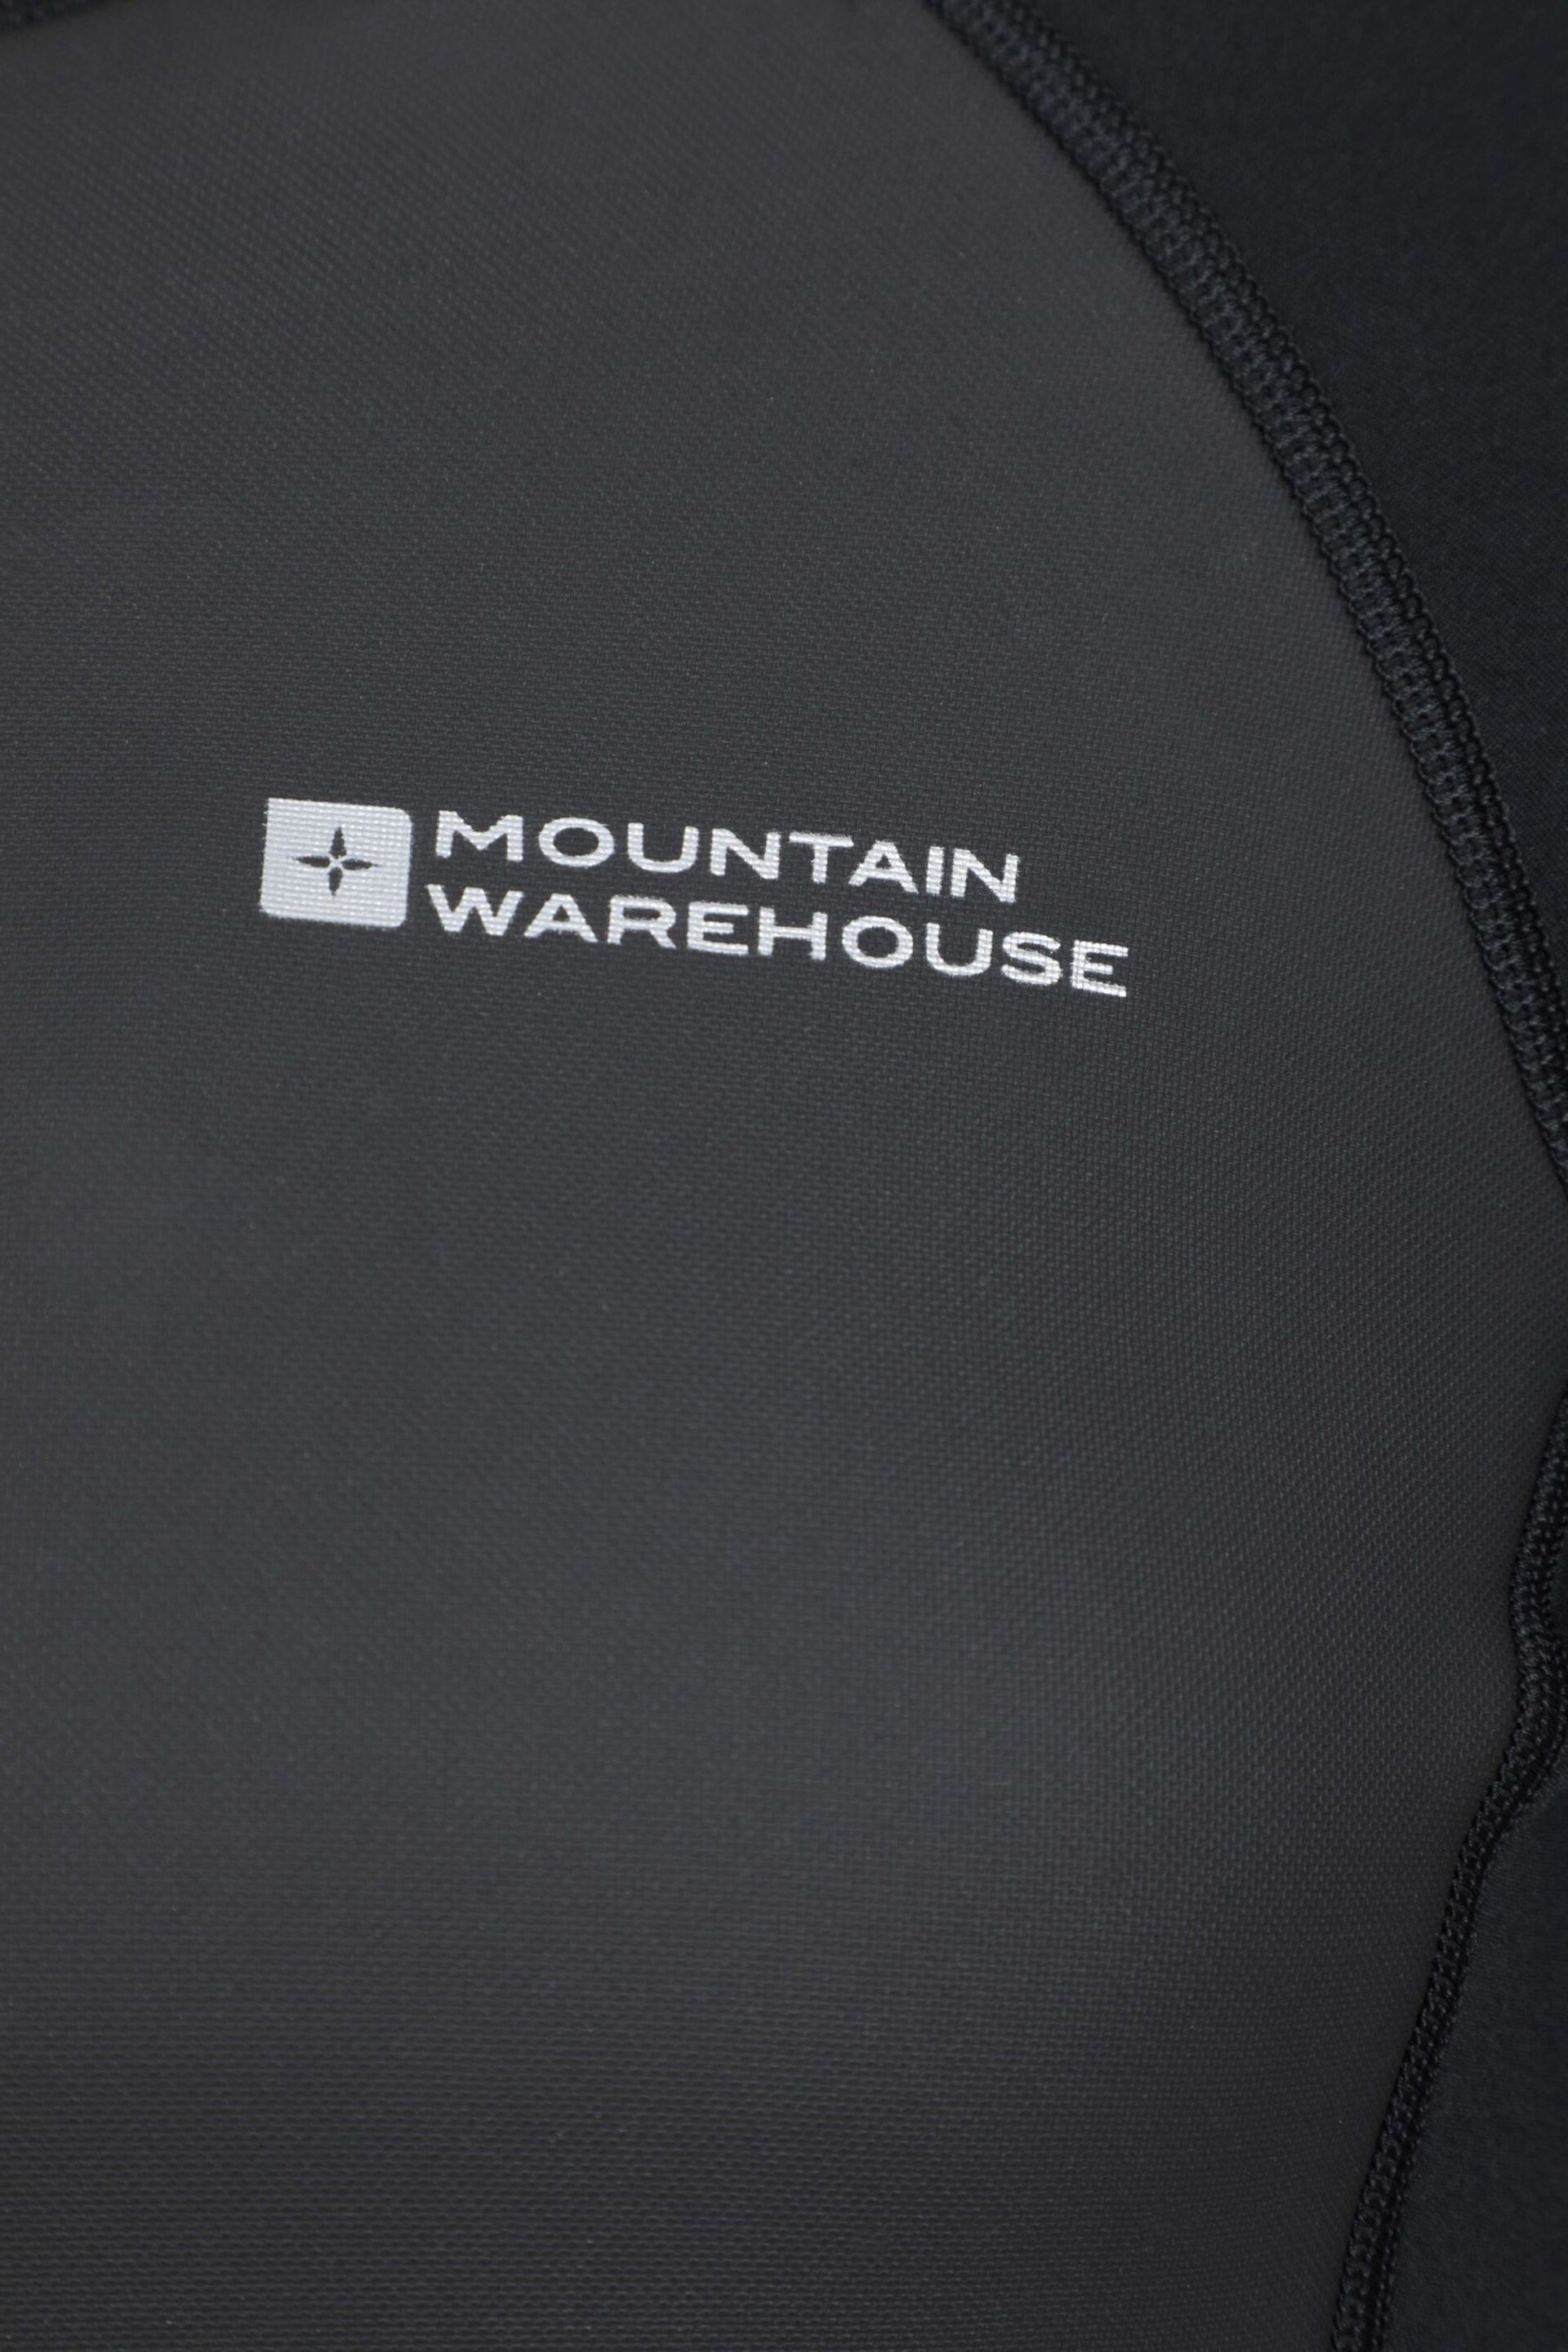 Mountain Warehouse Black Mens Full Length Neoprene Wetsuit - Image 5 of 5